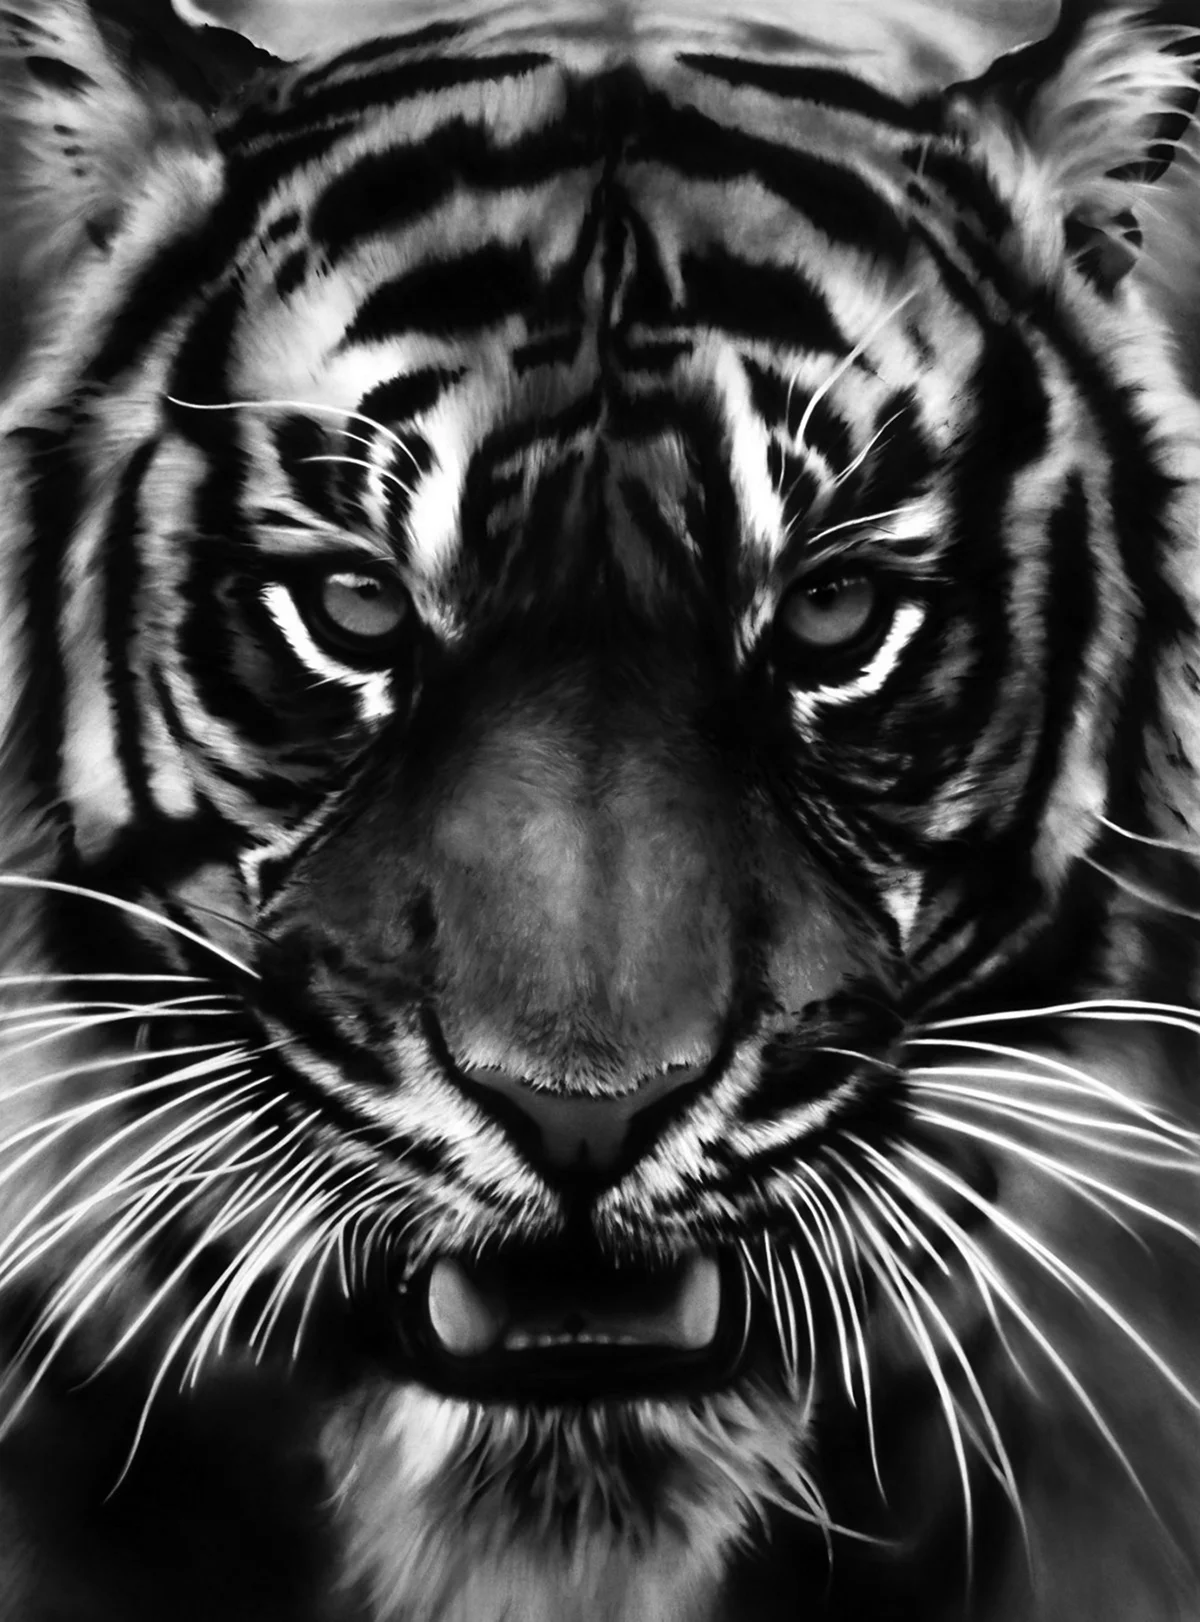 Перепосты и лайки помогут спасти «исчезающего» с фотографии тигра